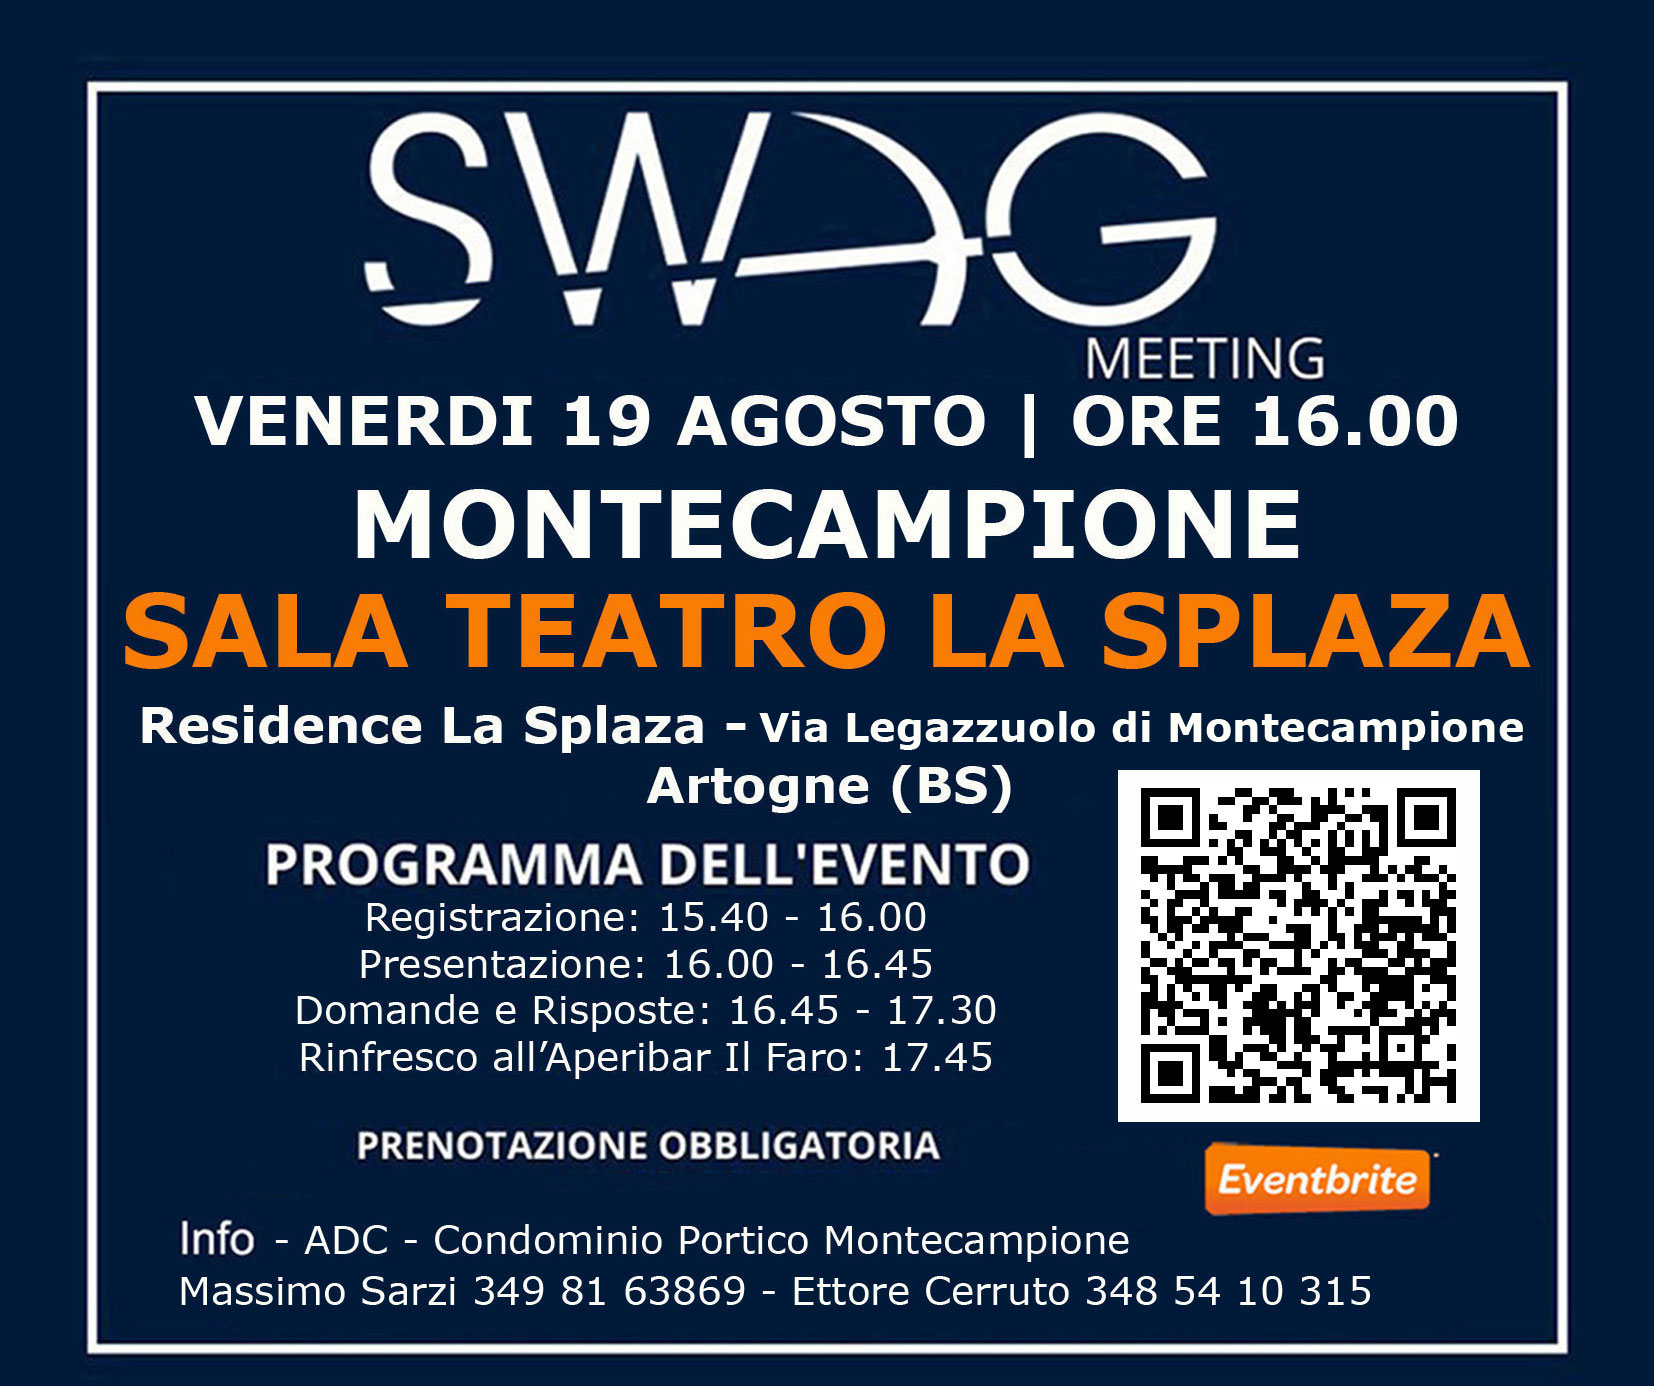 Eventbrite – SWAG Meeting MONTECAMPIONE Brescia, venerdì 19 agosto 2022